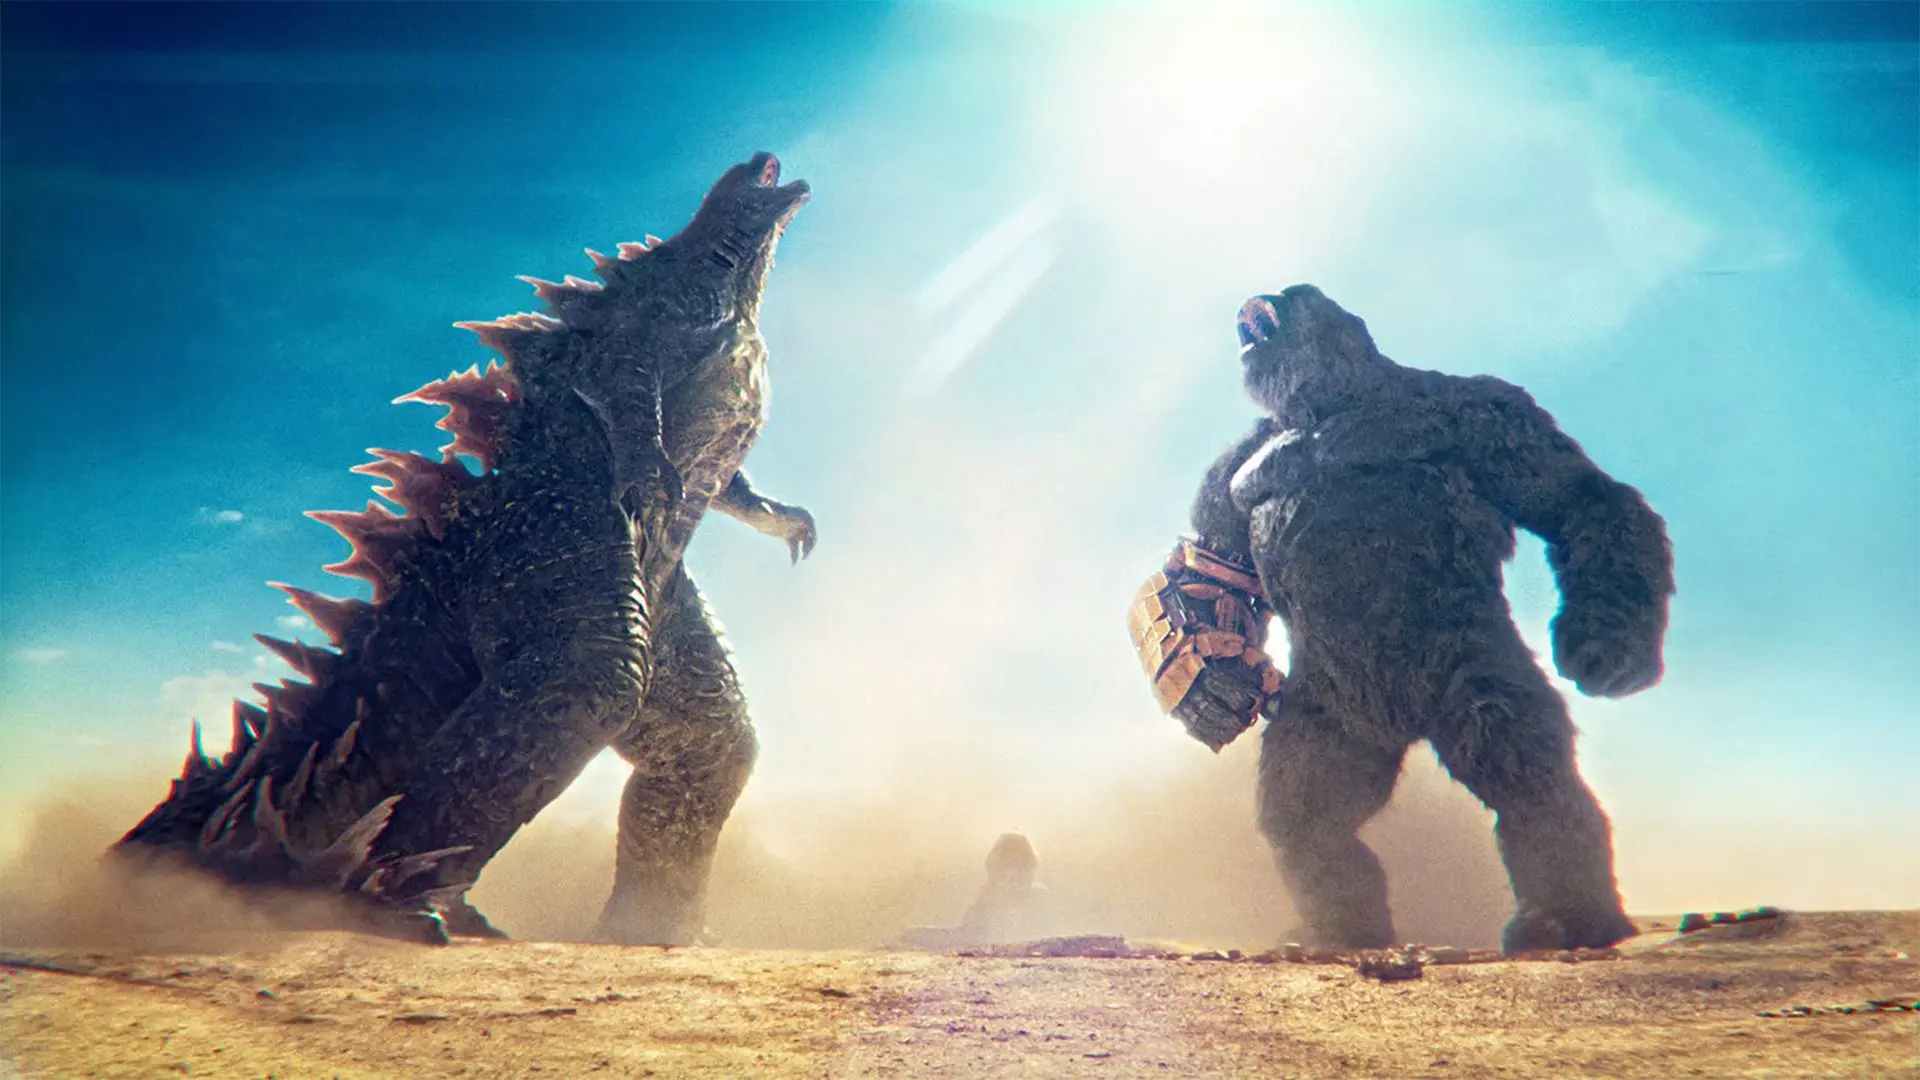 فیلم Godzilla x Kong به یک رکورد مهم دست پیدا کرد